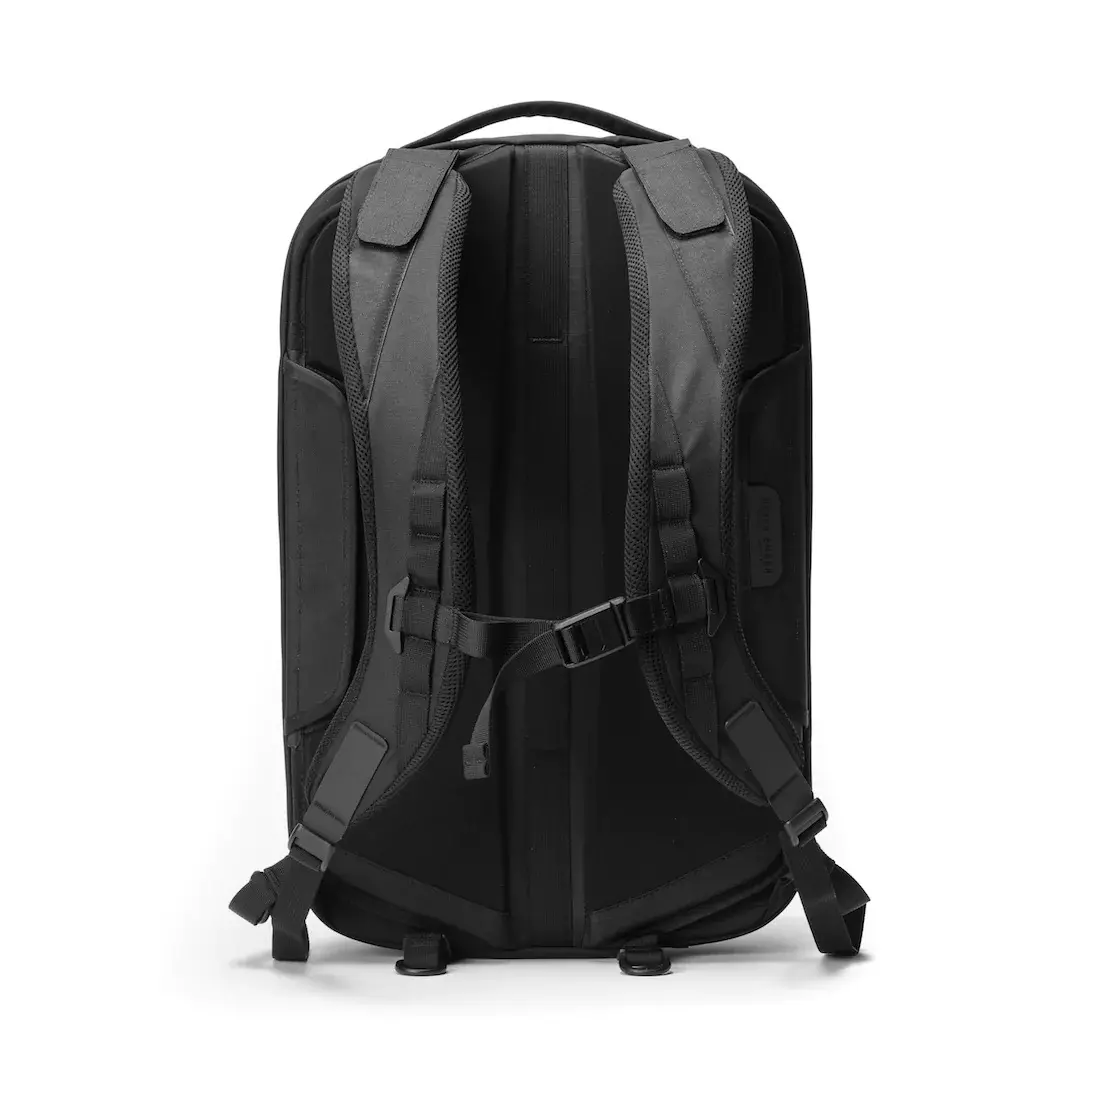 Купить рюкзак Black Ember Shadow-26 онлайн с бесплатной доставкой